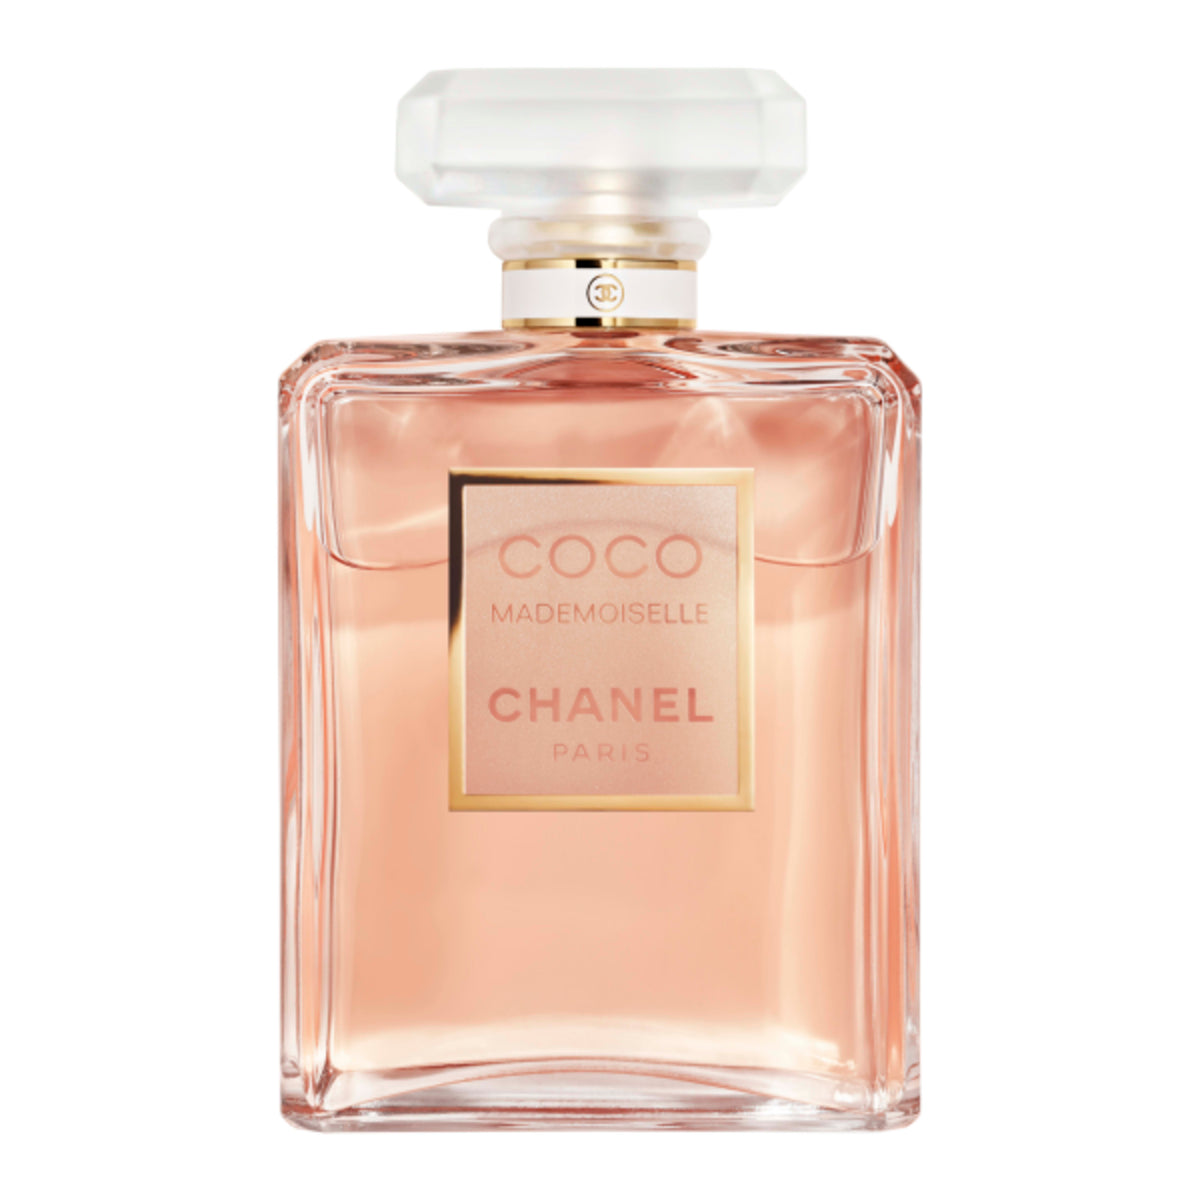 Coco Mademoiselle Chanel Paris Eau De Parfum 6.8oz